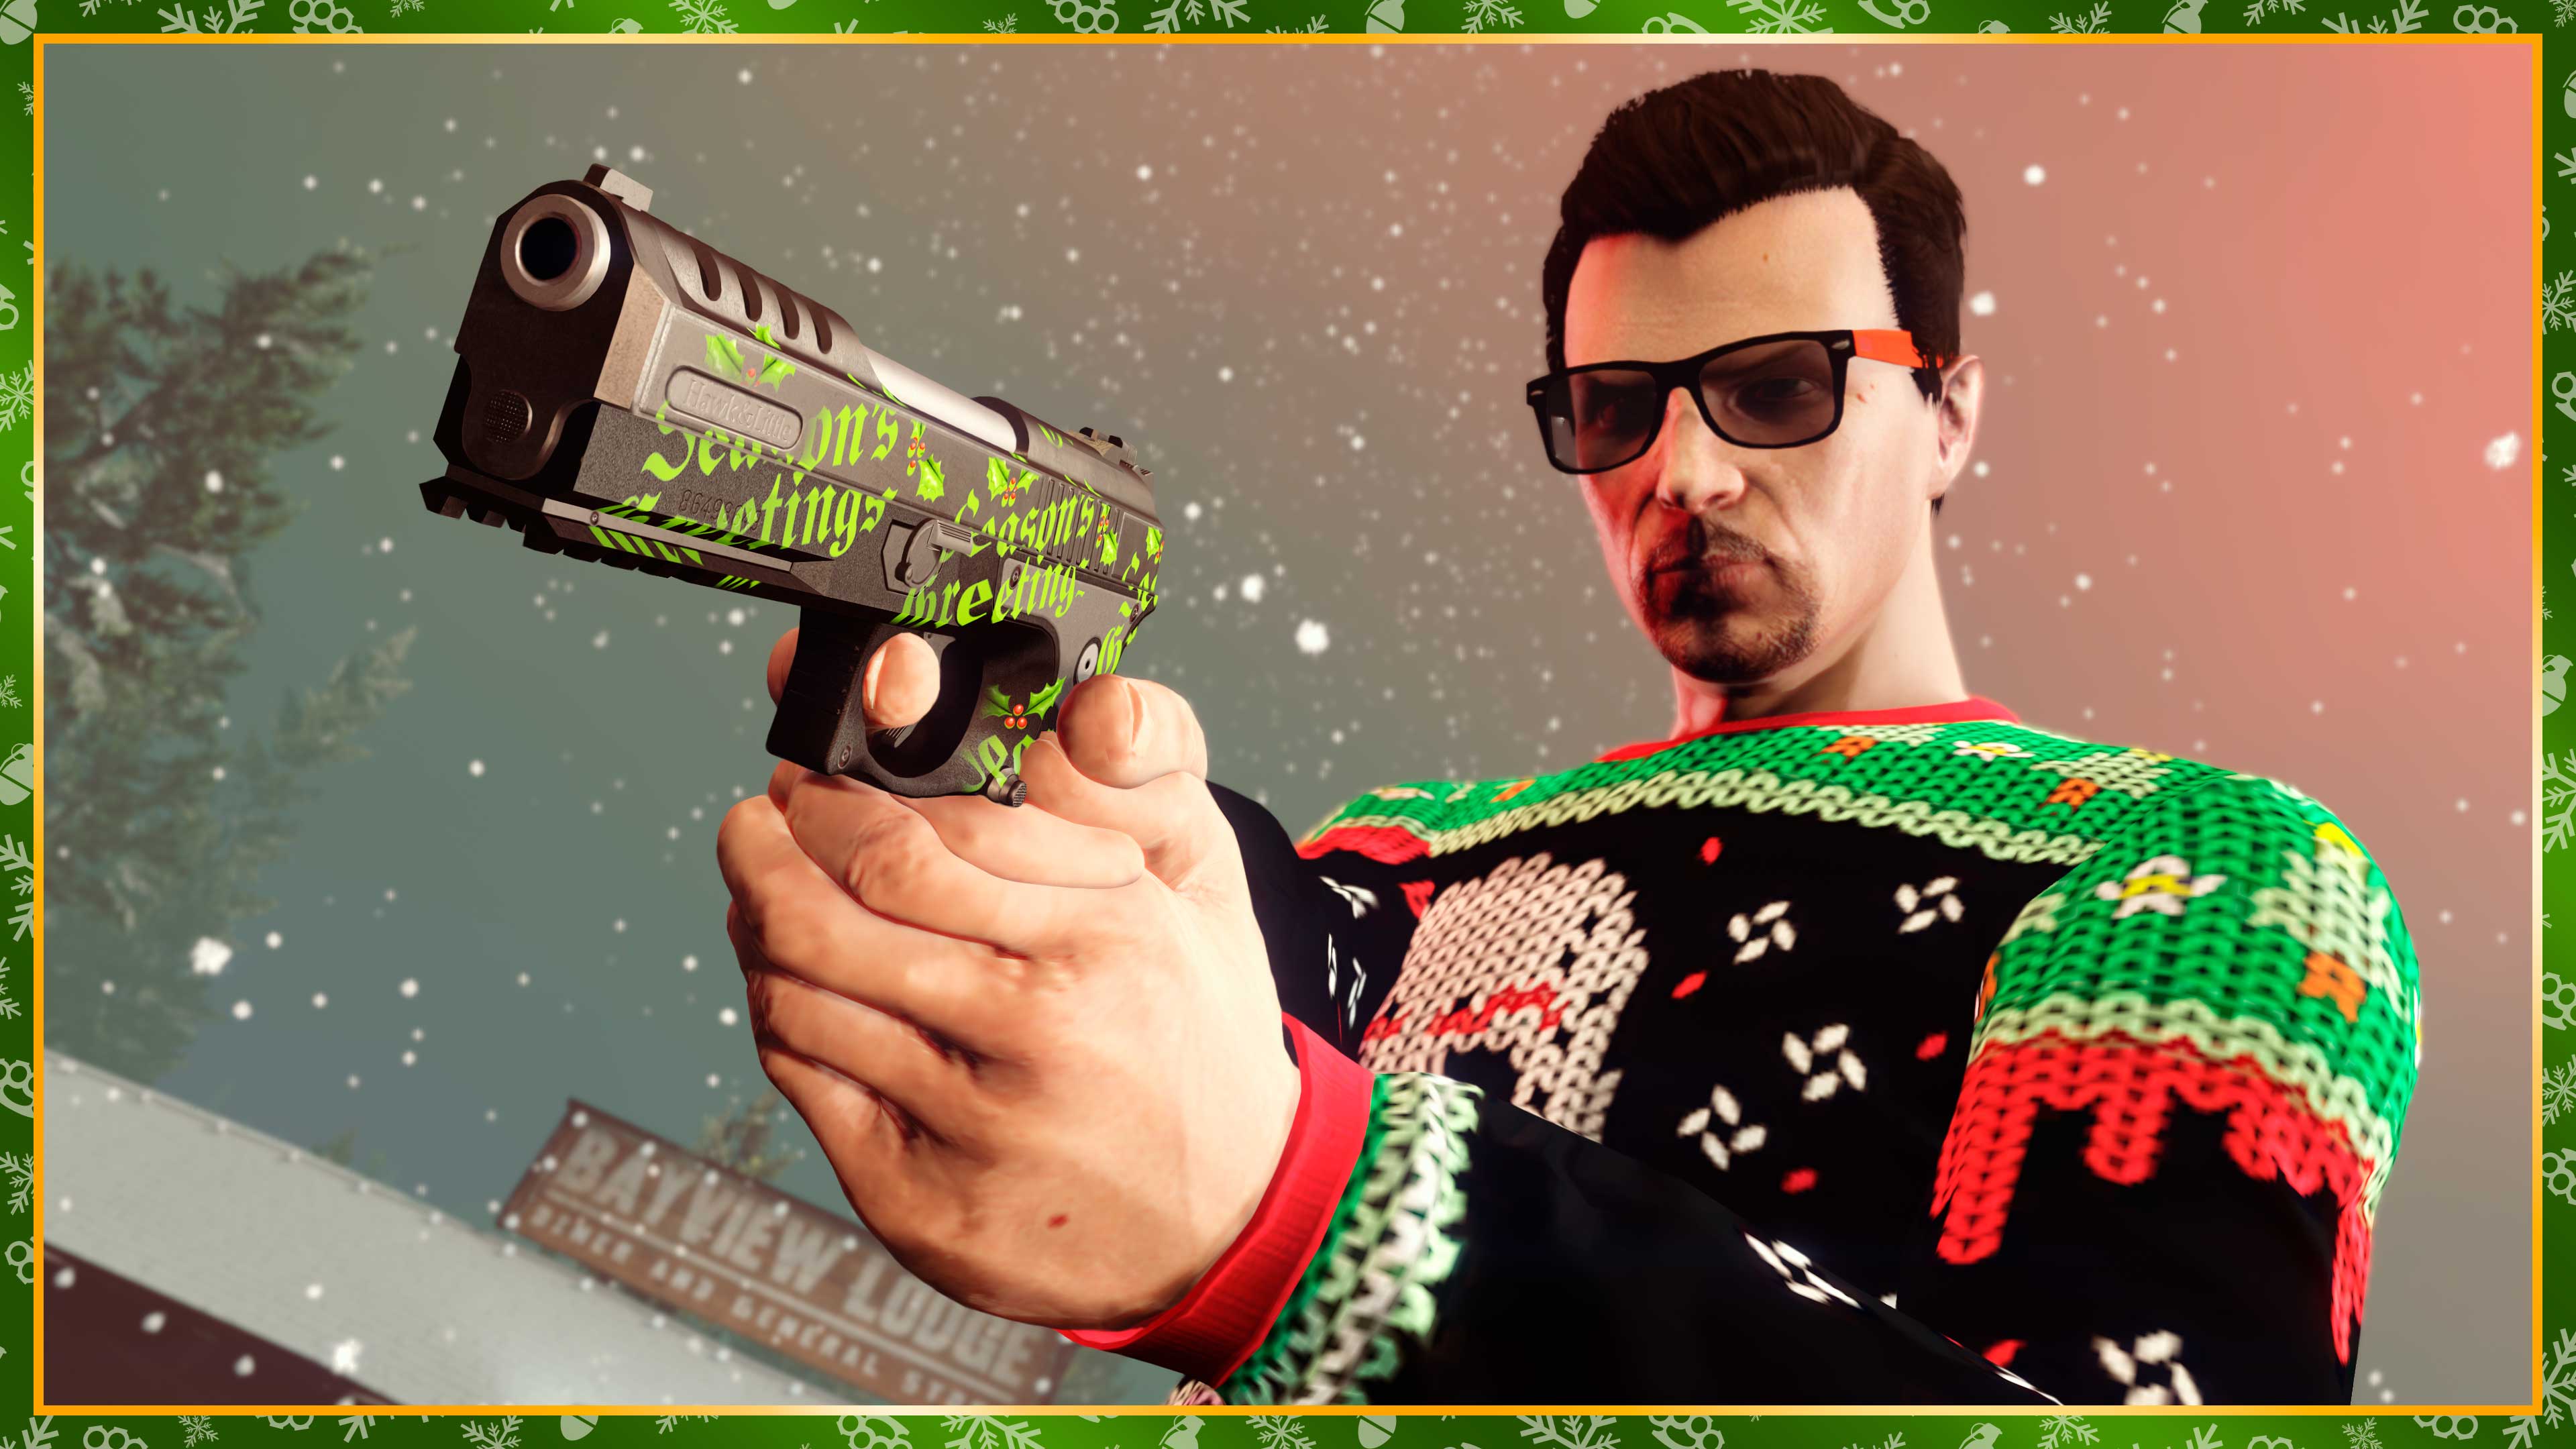 immagine di un personaggio di GTA Online con indosso un maglione e una pistola decorata in mano